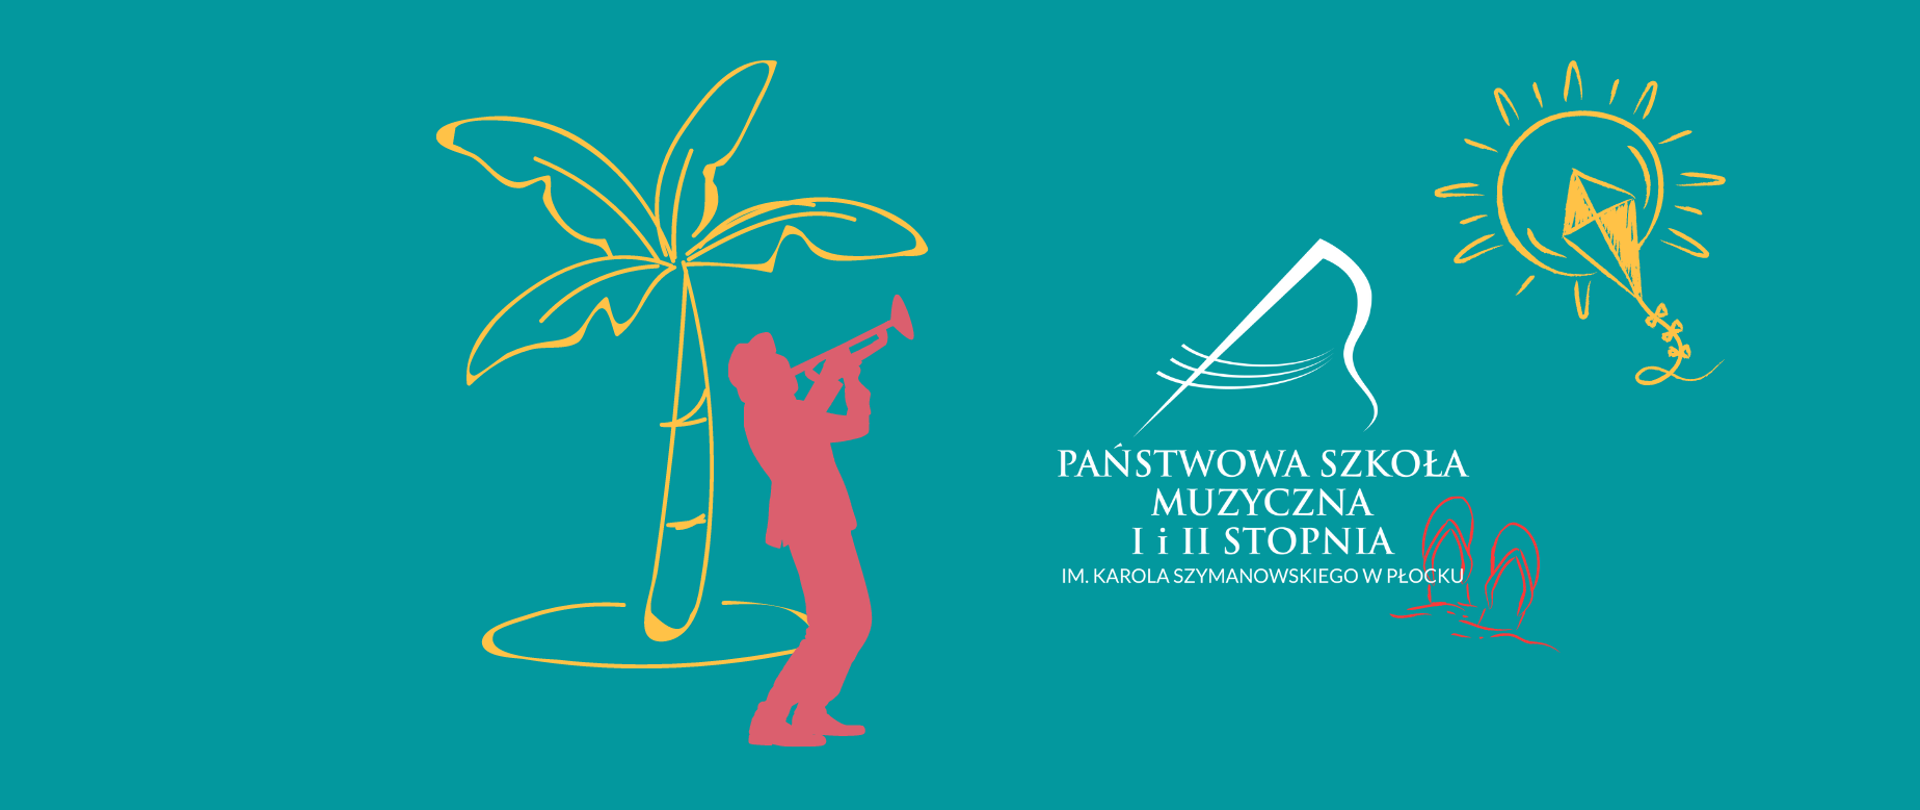 Zarysy człowieka z trąbką przy palmie oraz logo strony usytuowane po prawej stronie grafiki